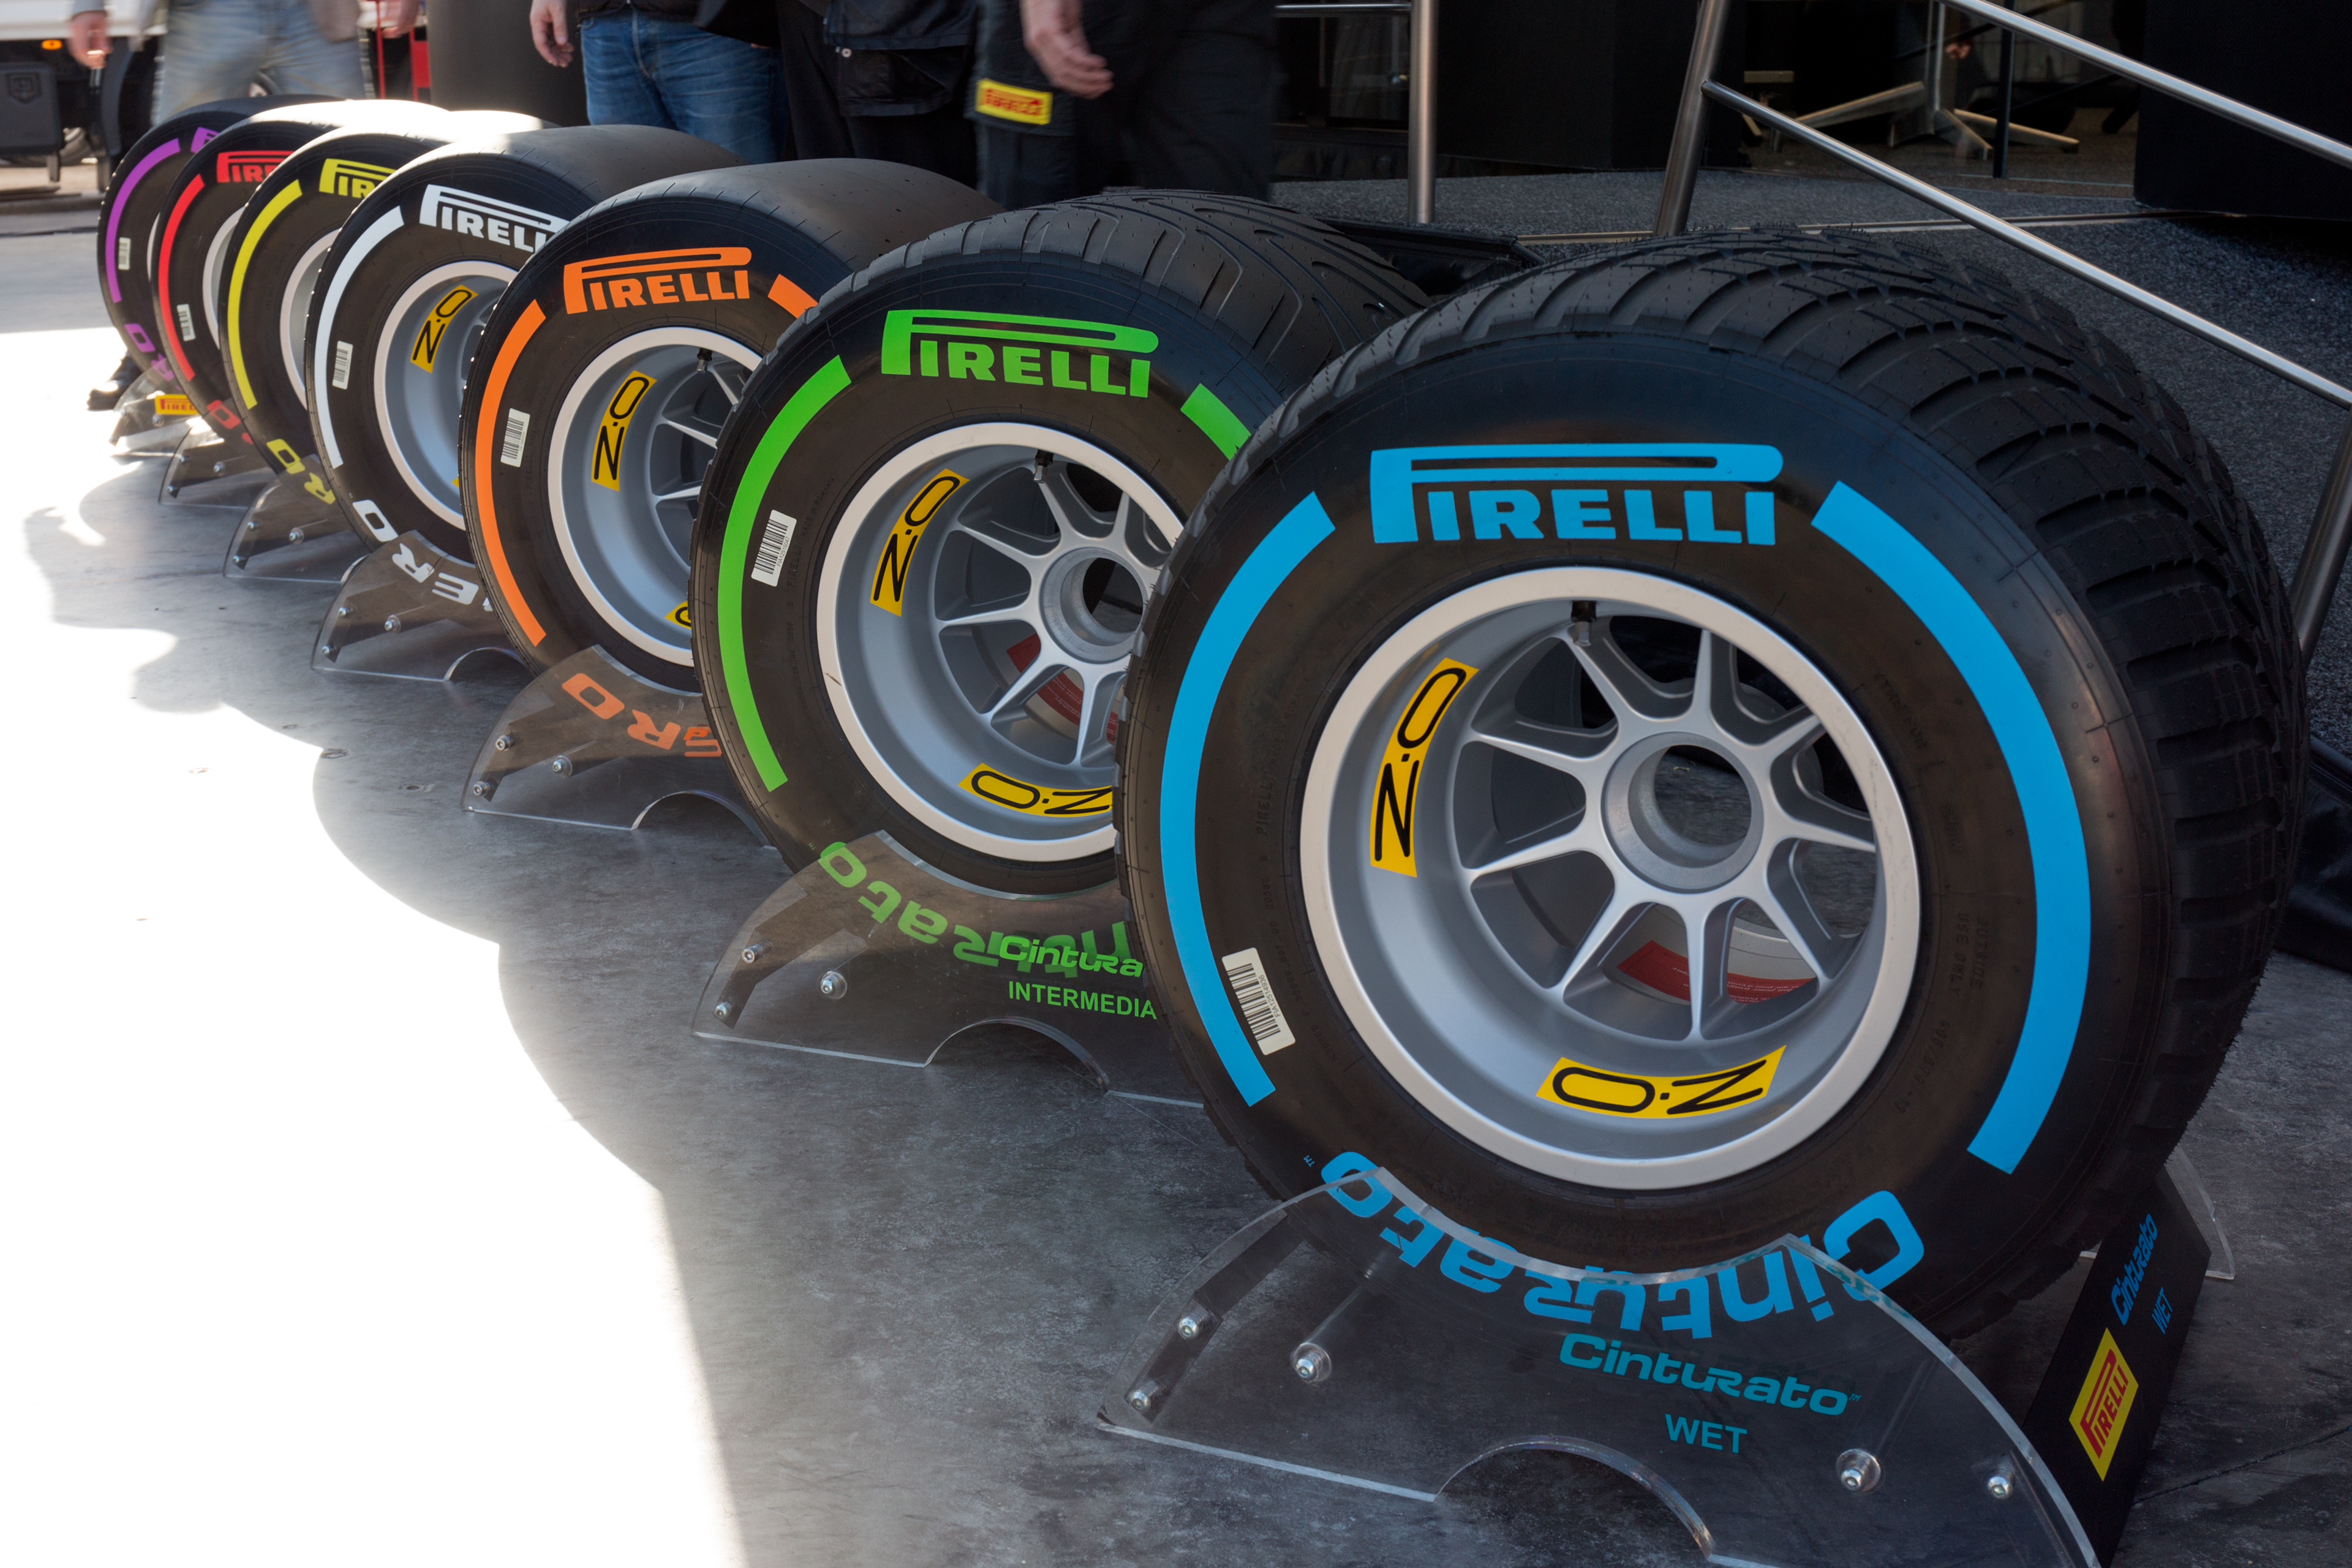 Forskel igen angre Pirelli skrotter 1.800 dæk pga. aflysning af løb i F1 | Bilmagasinet.dk